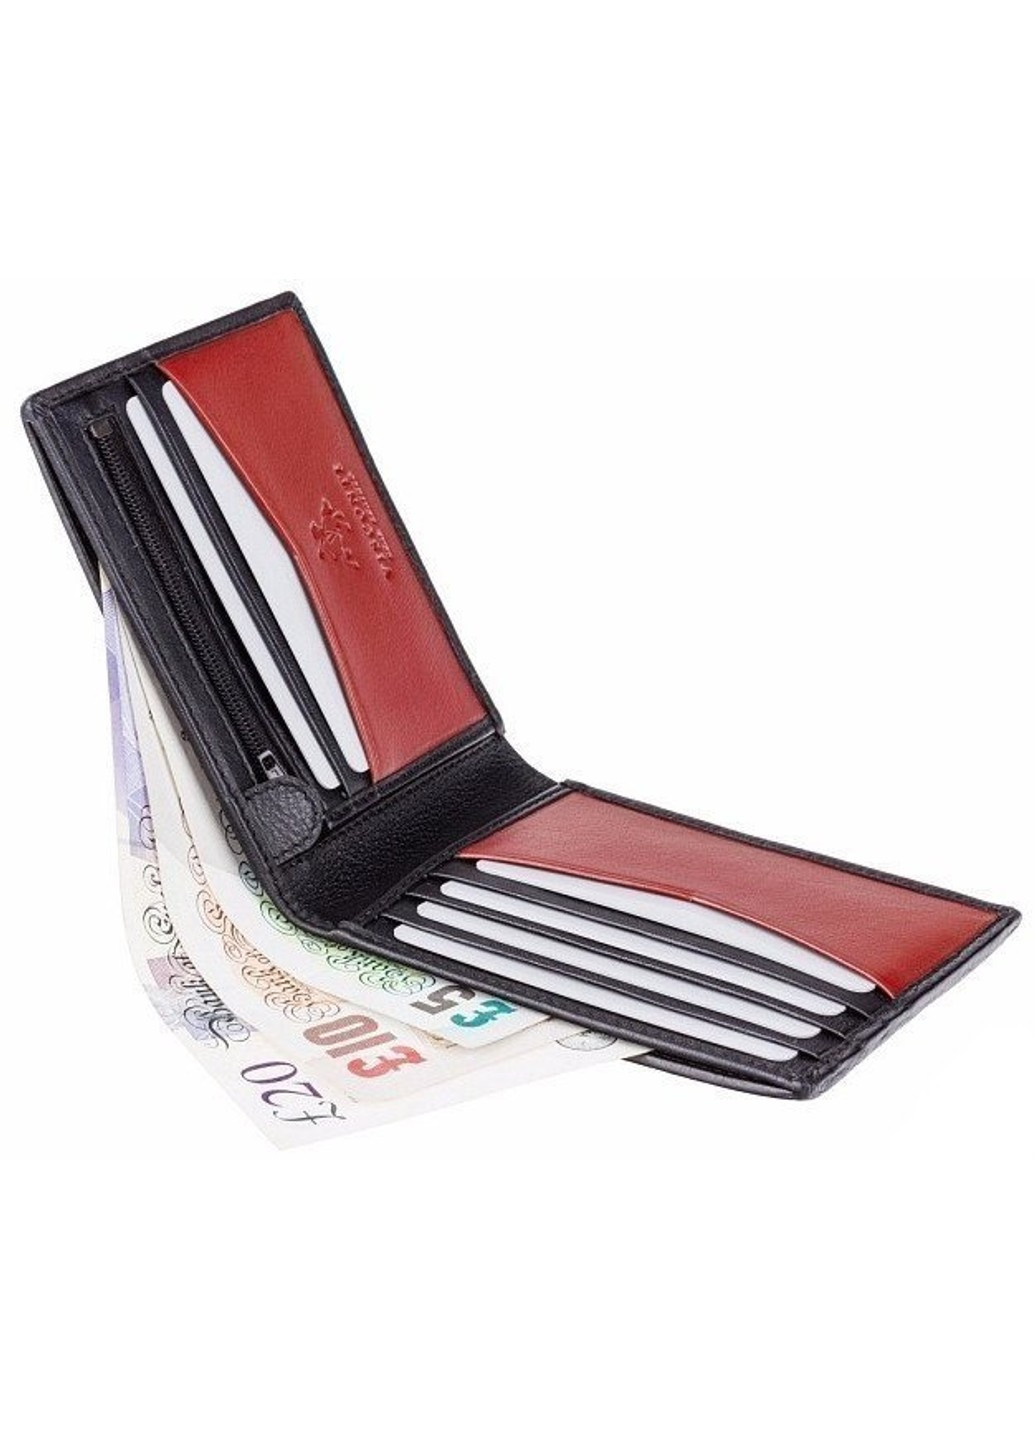 Мужской бумажник VSL20 (Tan) с защитой RFID Visconti (262976693)